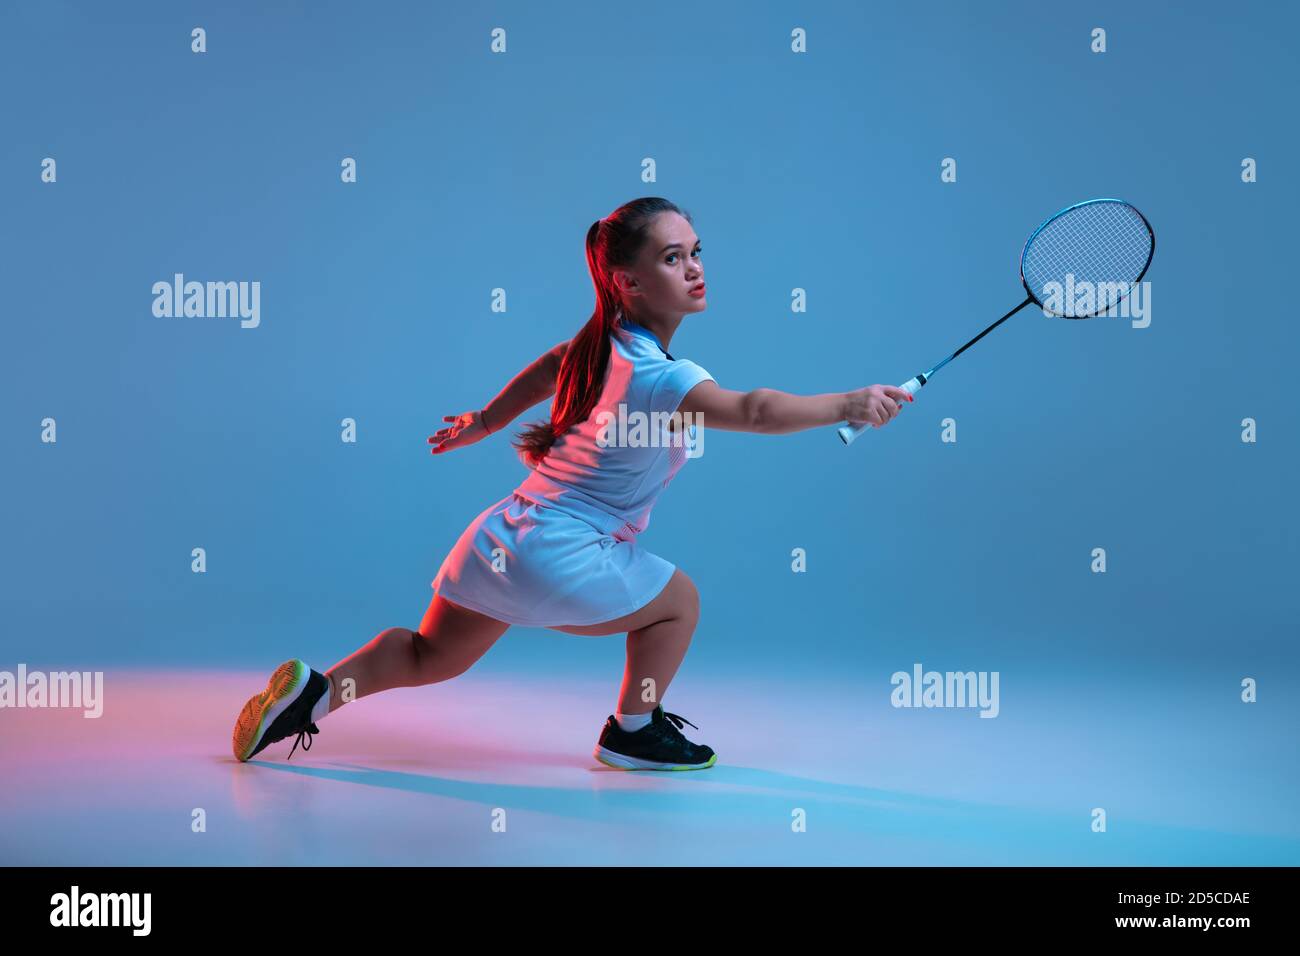 Ganador. Hermosa mujer enana practicando en badminton aislado sobre fondo azul en luz de neón. Estilo de vida de personas inclusivas, diversidad y equilidad. Deporte, actividad y movimiento. CopySpace. Foto de stock